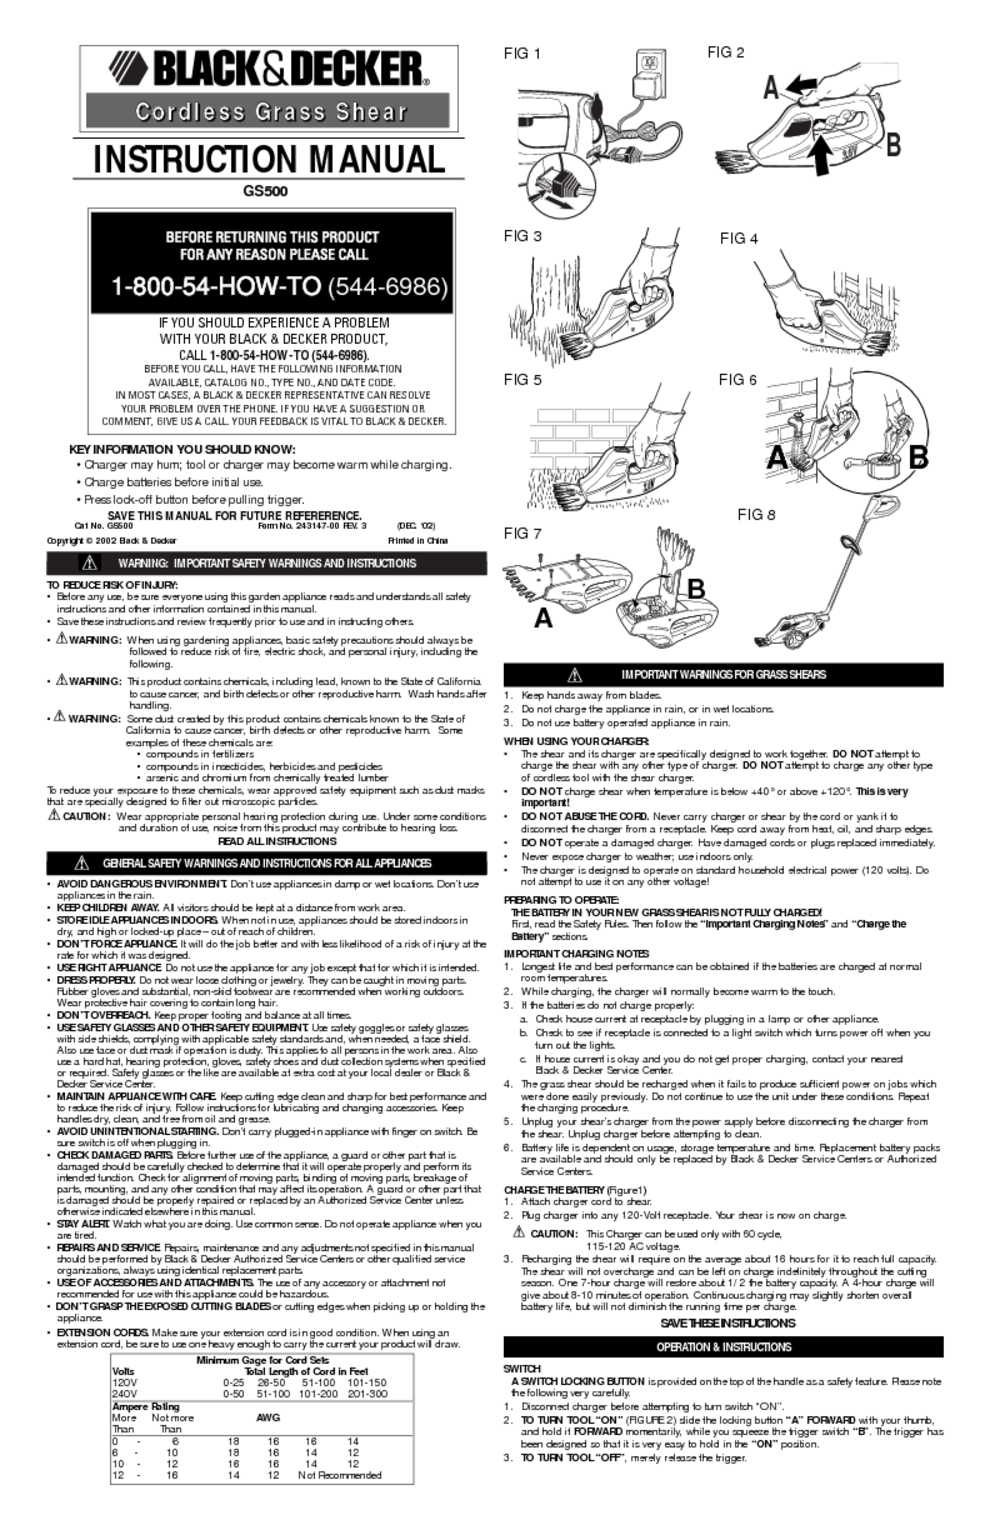 Aerogarden Model 100302-blk User Manual - mineever